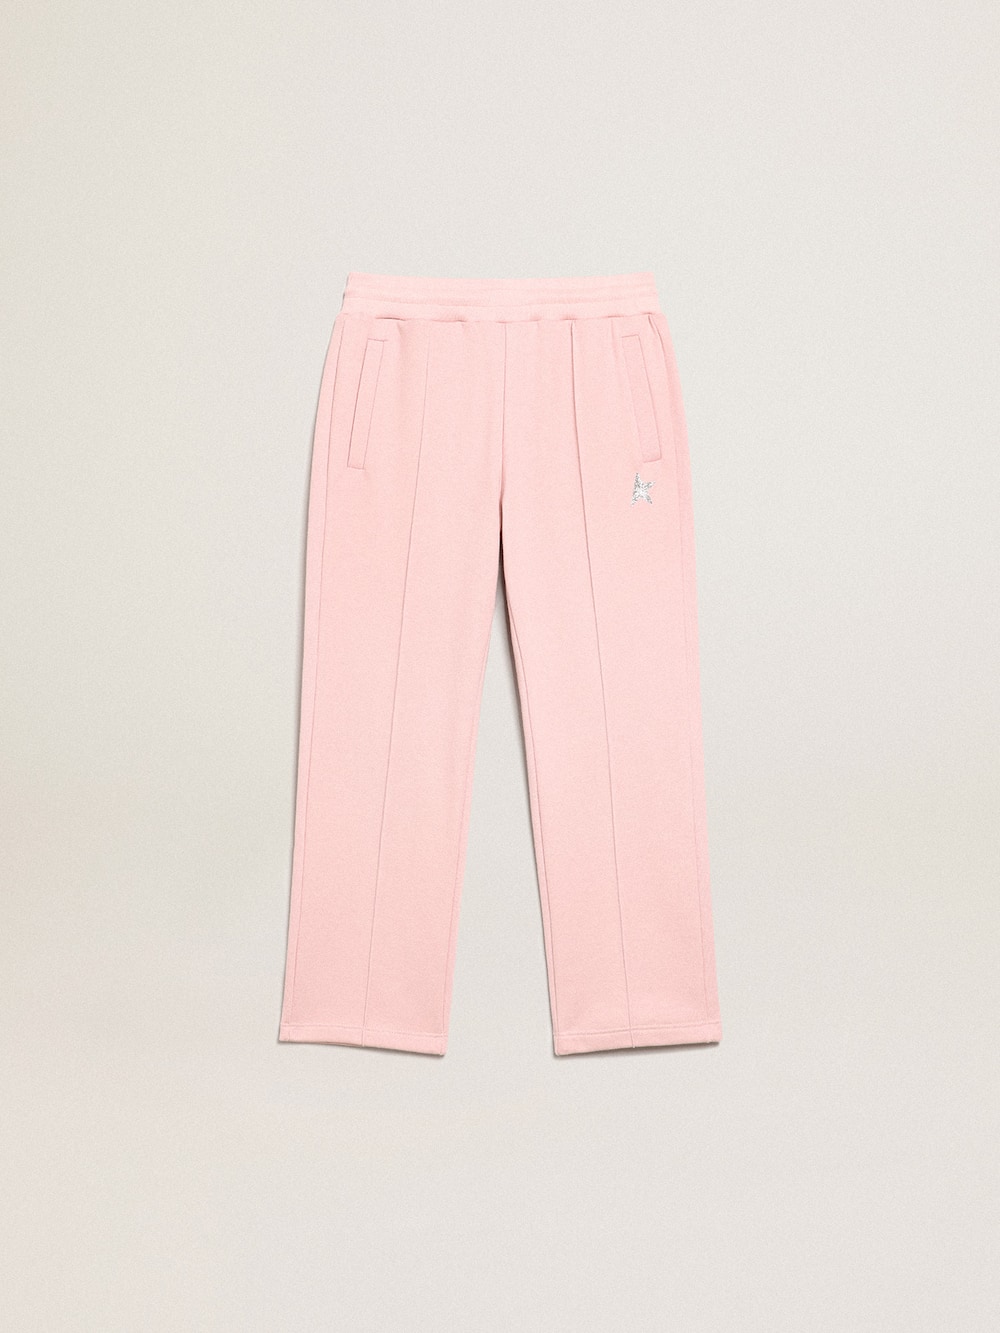 Golden Goose - Pantalone jogging rosa con stella in glitter sul davanti in 